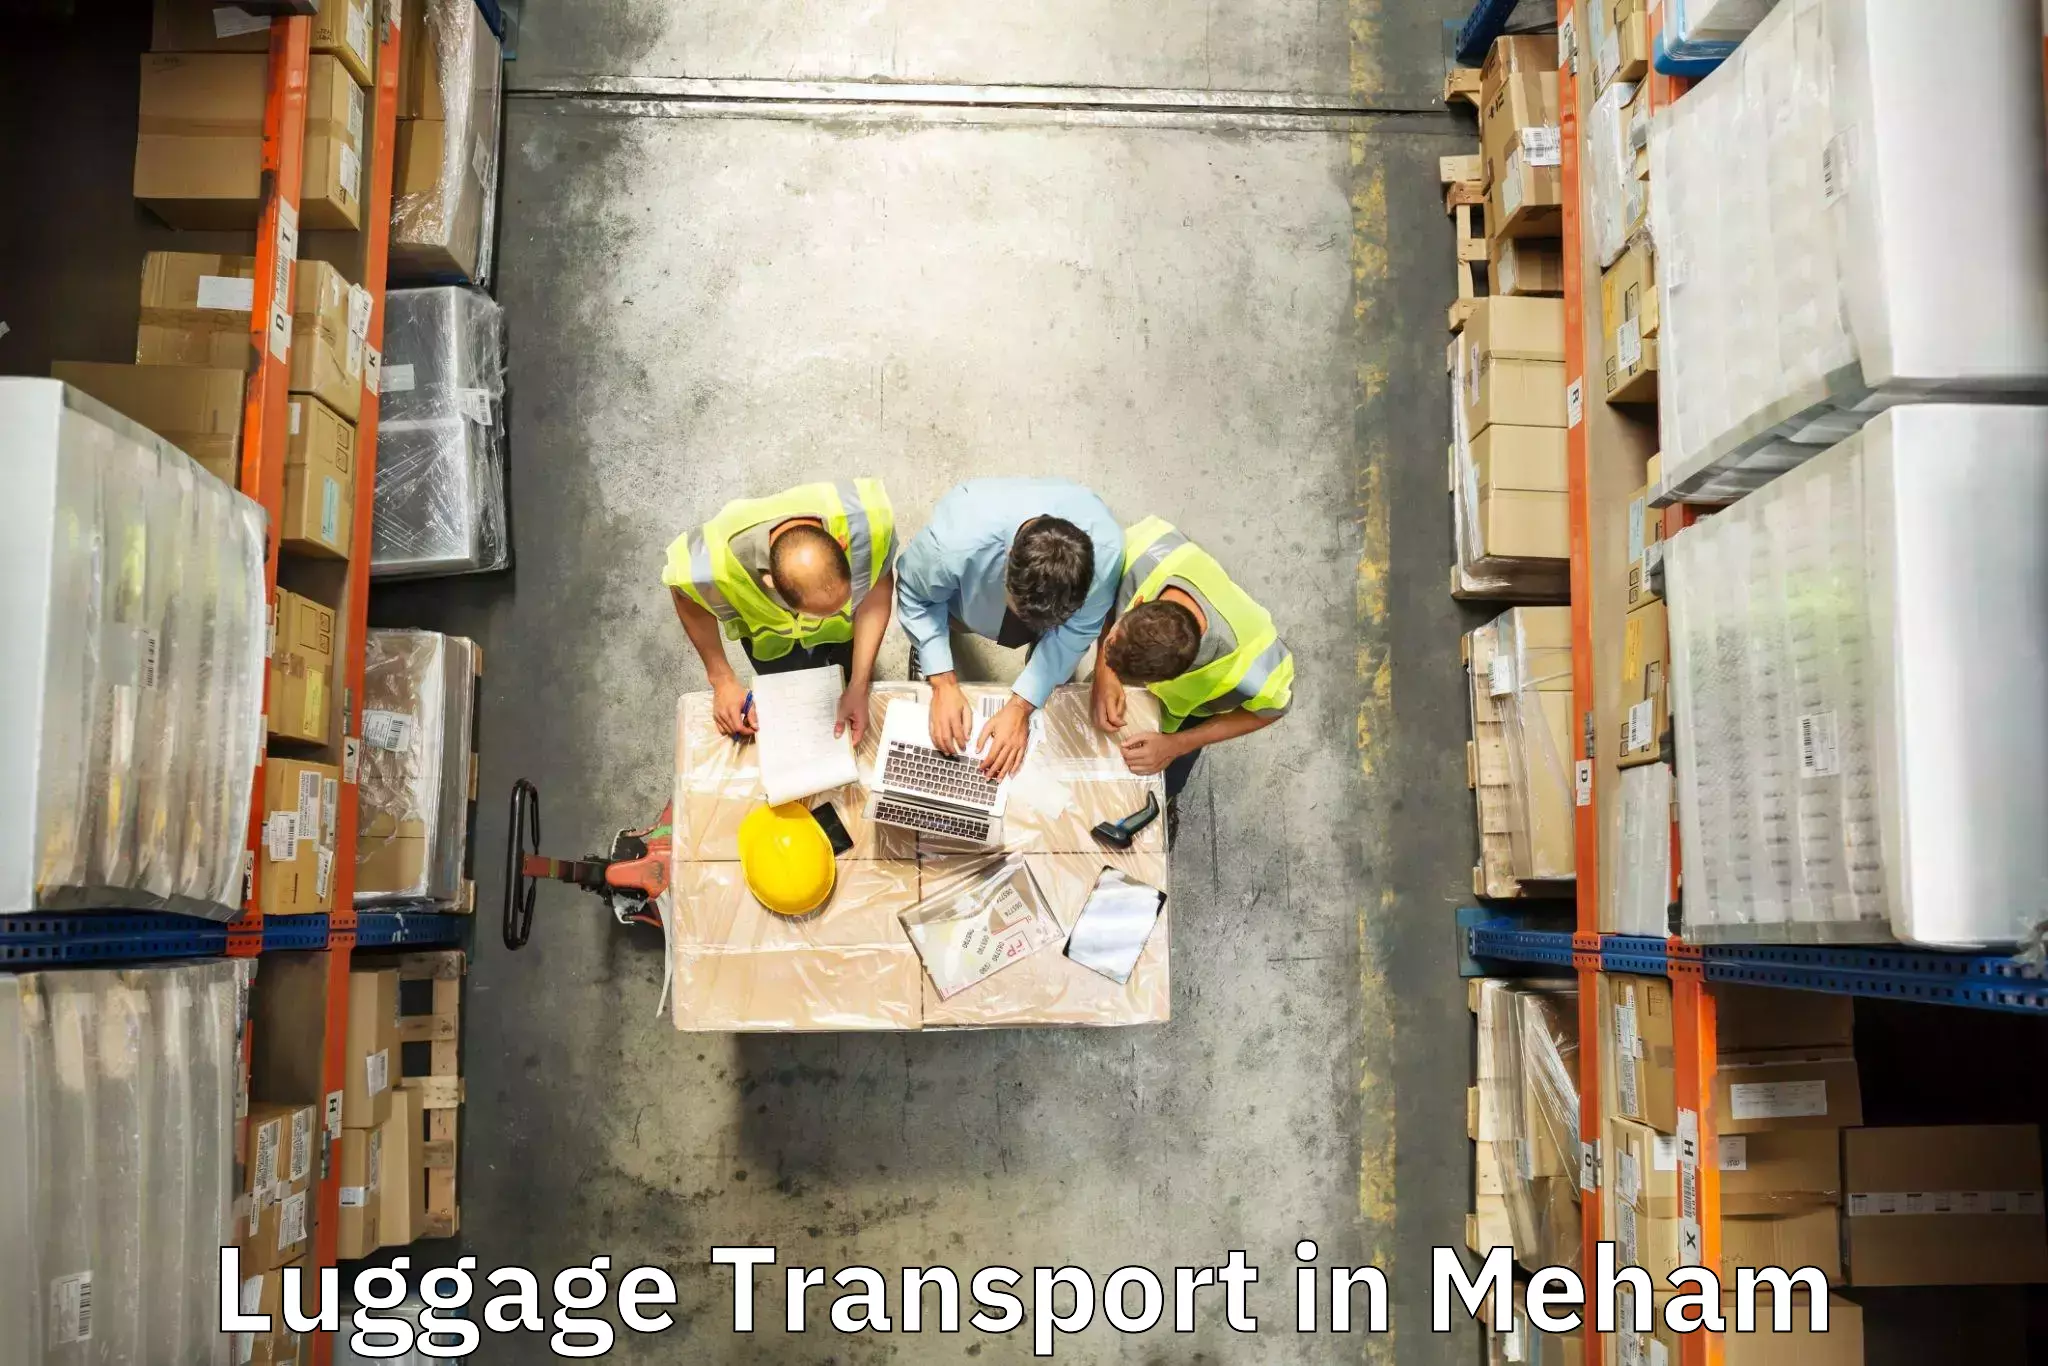 Baggage transport logistics in Meham